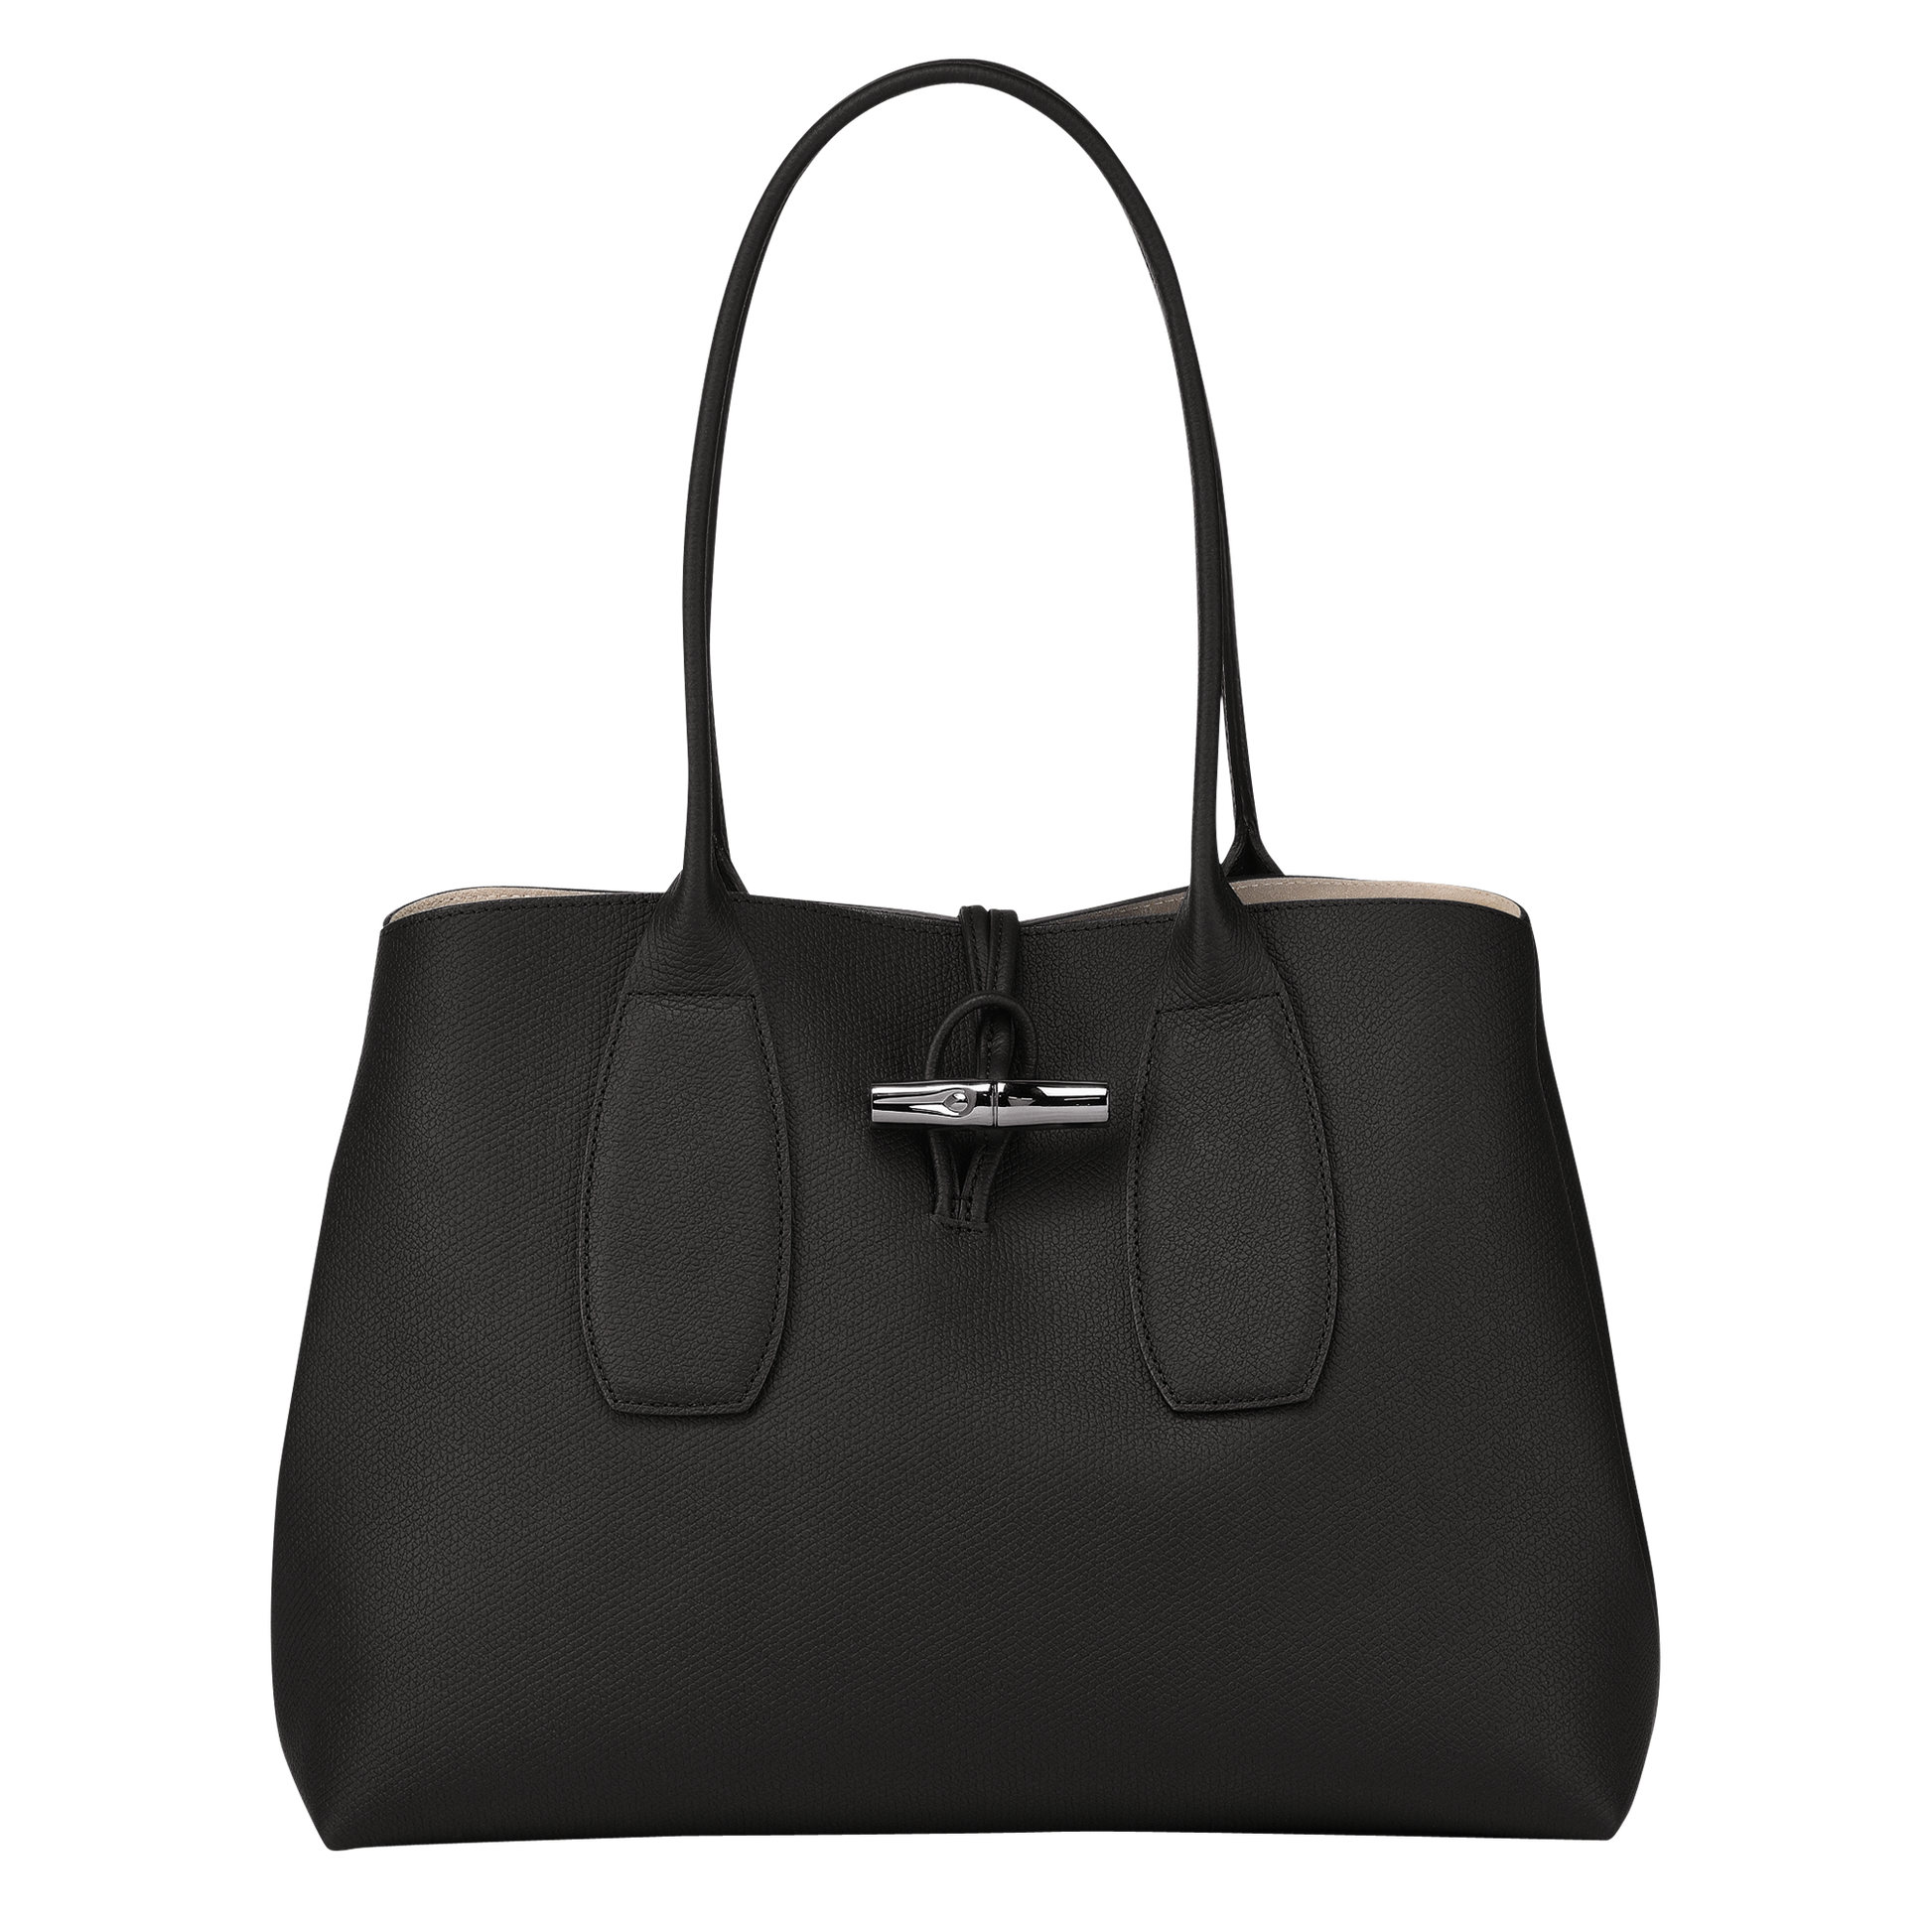 Roseau Shoulder Bag in Black - 1 - 10060HPN001